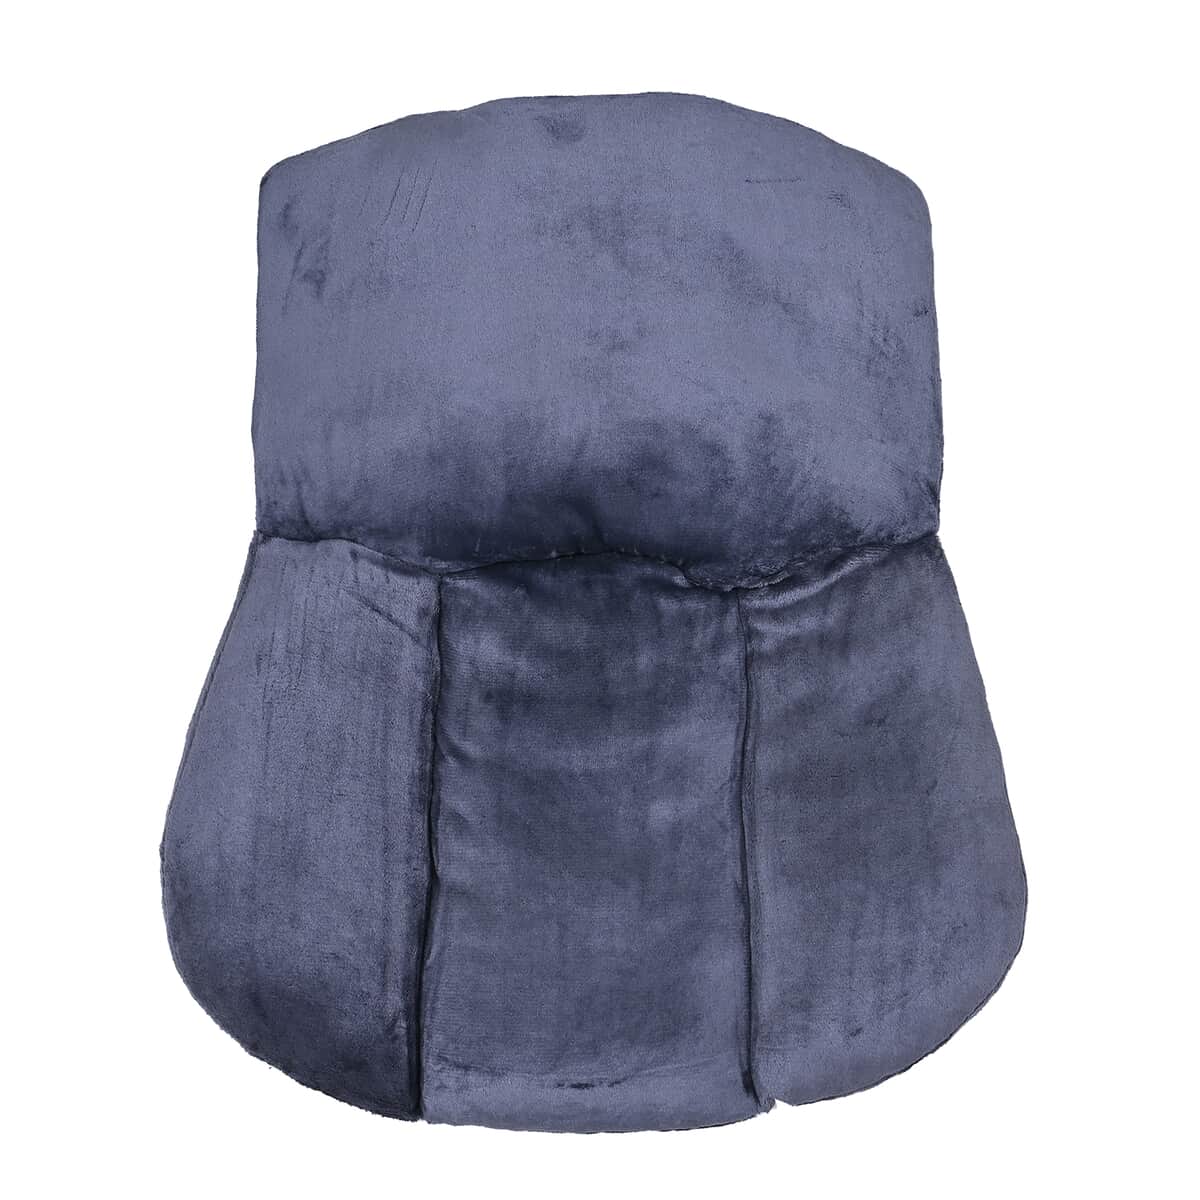 Velvet Soft Back Support Cushion - Black (Microfiber) image number 0